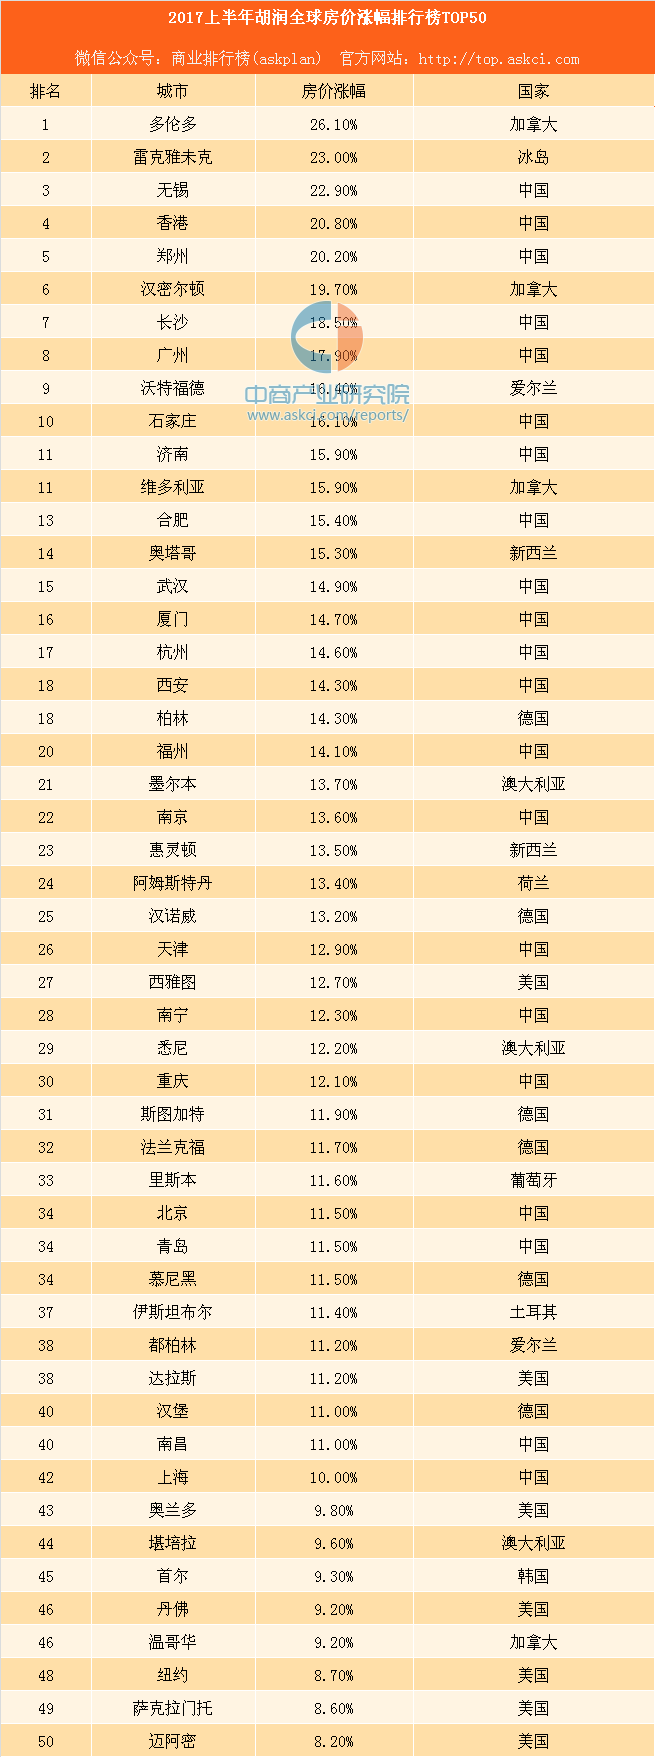 2017上半年胡润全球房价涨幅排行榜TOP50:中